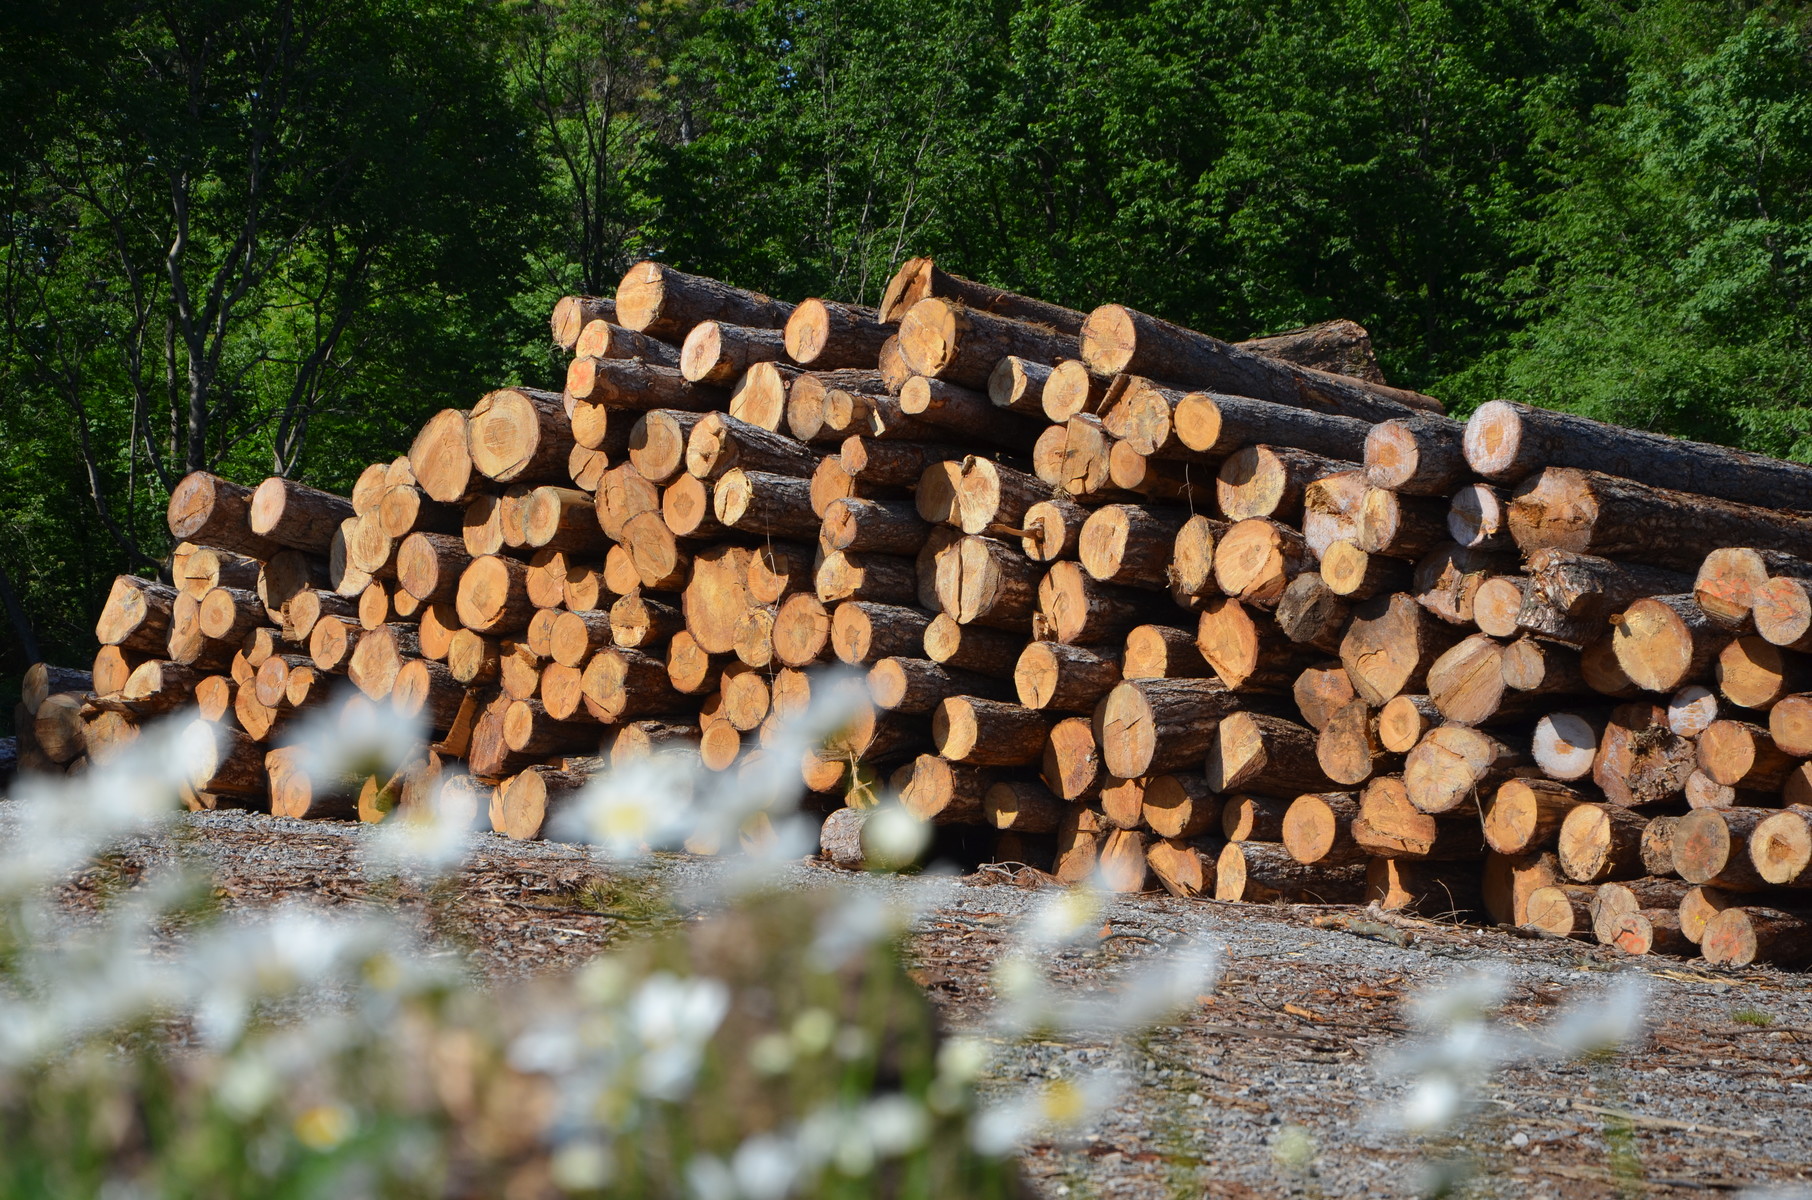 Na Gozdarskem inštitutu Slovenije bomo gradili z lesom